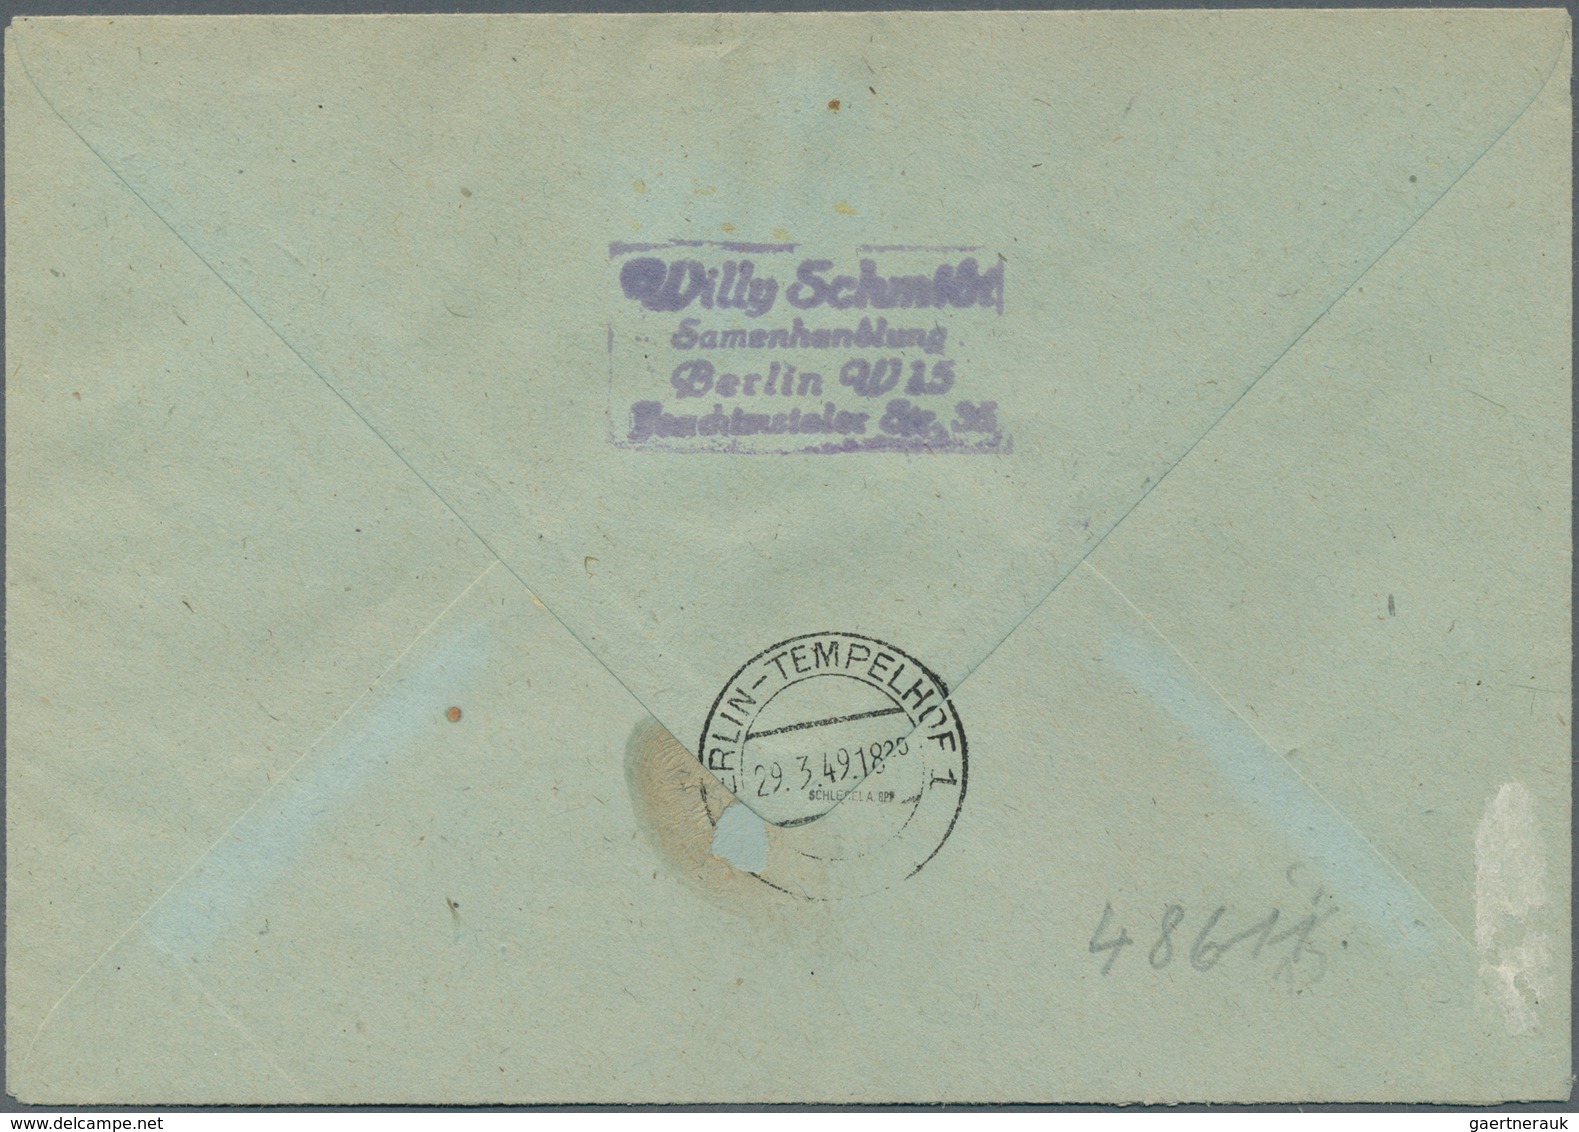 20615 Berlin - Postschnelldienst: 1949, PSD-Brief Mit 2 X 6 Und 2 X 80 Pfennig SA, Verm. Abholung Aus Der - Covers & Documents